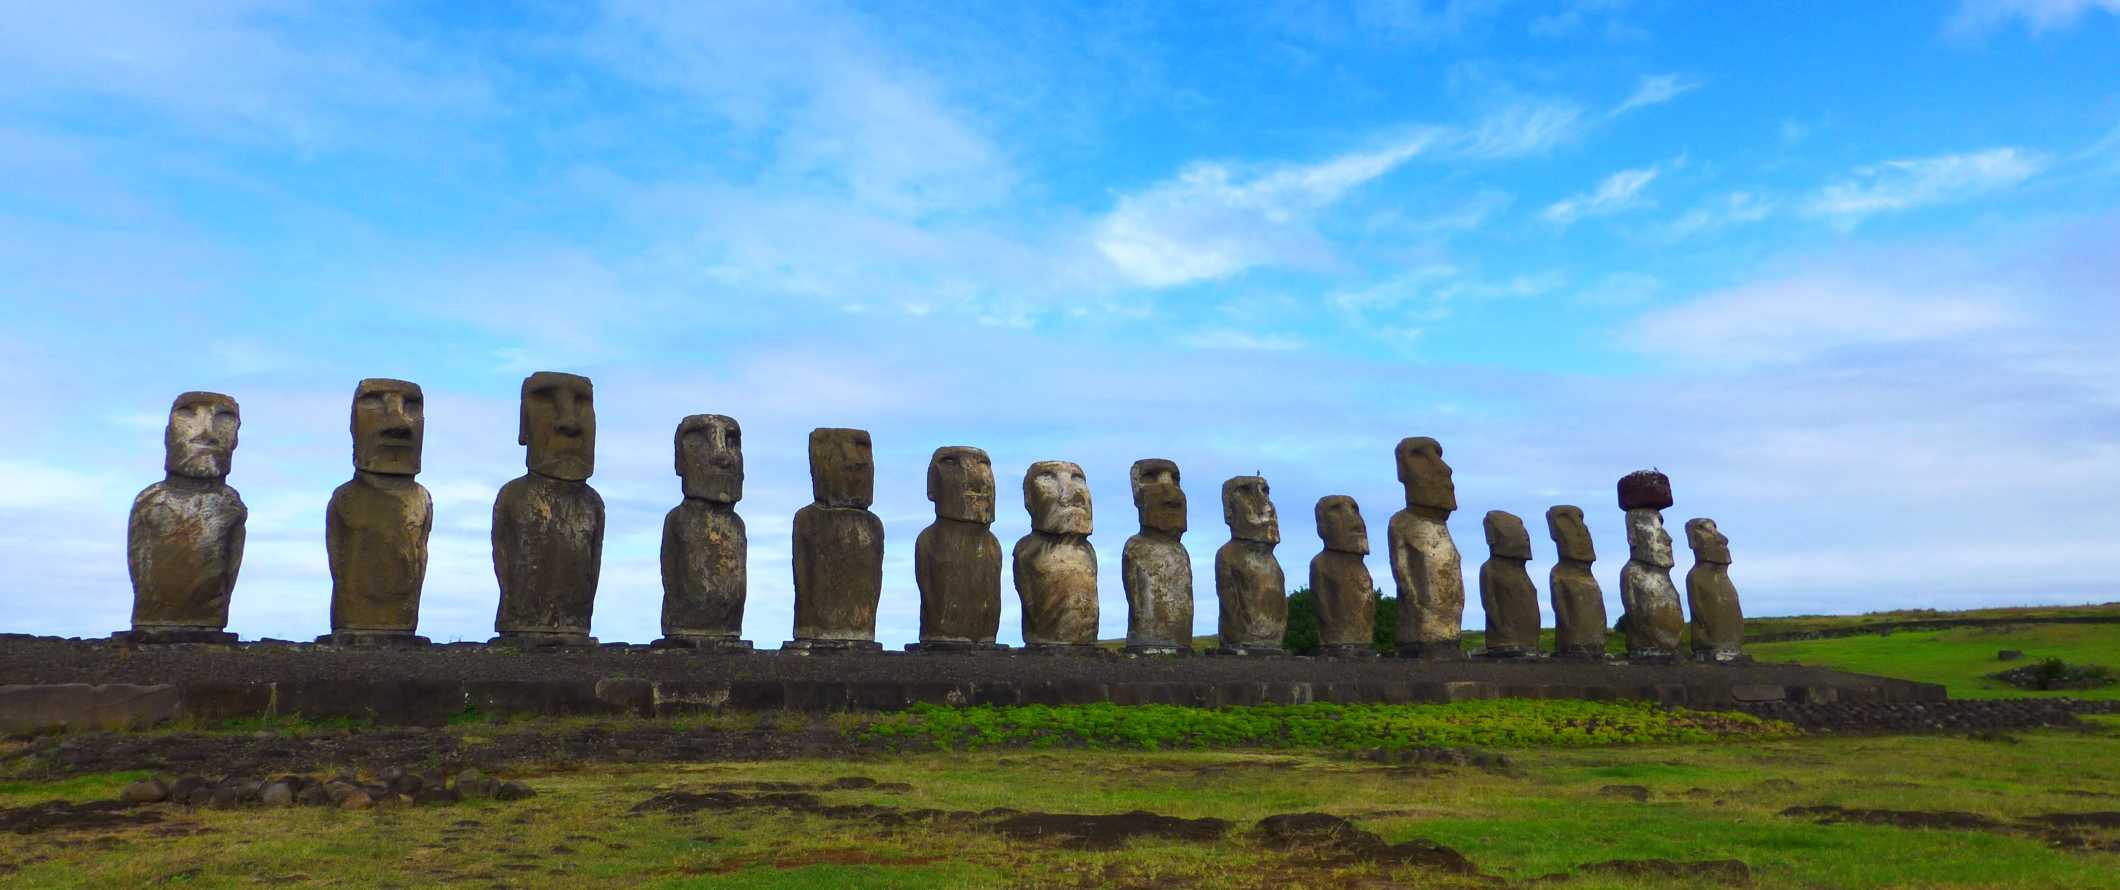 Cabeças de pedra gigantes alinhadas um ao lado do outro na ilha de Páscoa na costa do Chile